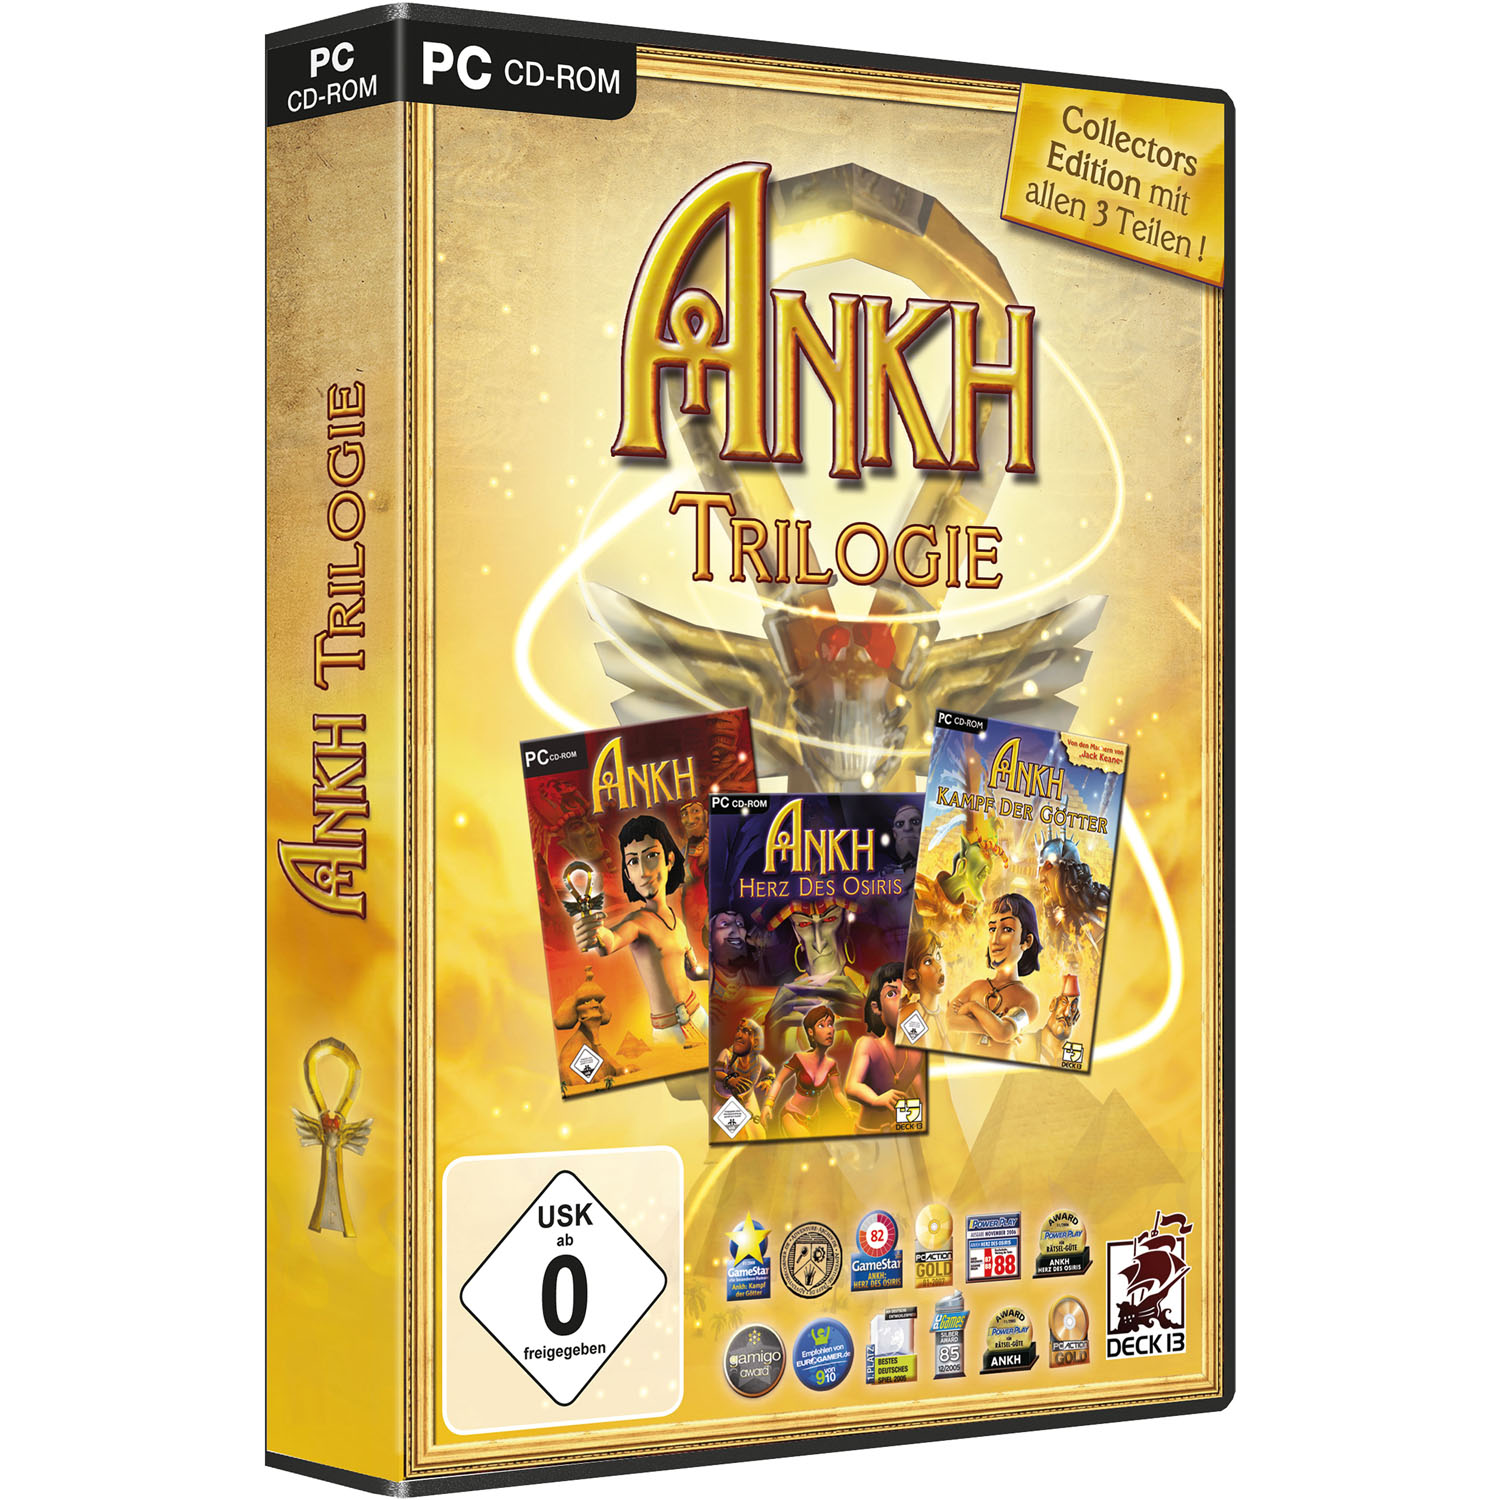 Trilogie [PC] - - Edition ANKH Collectors